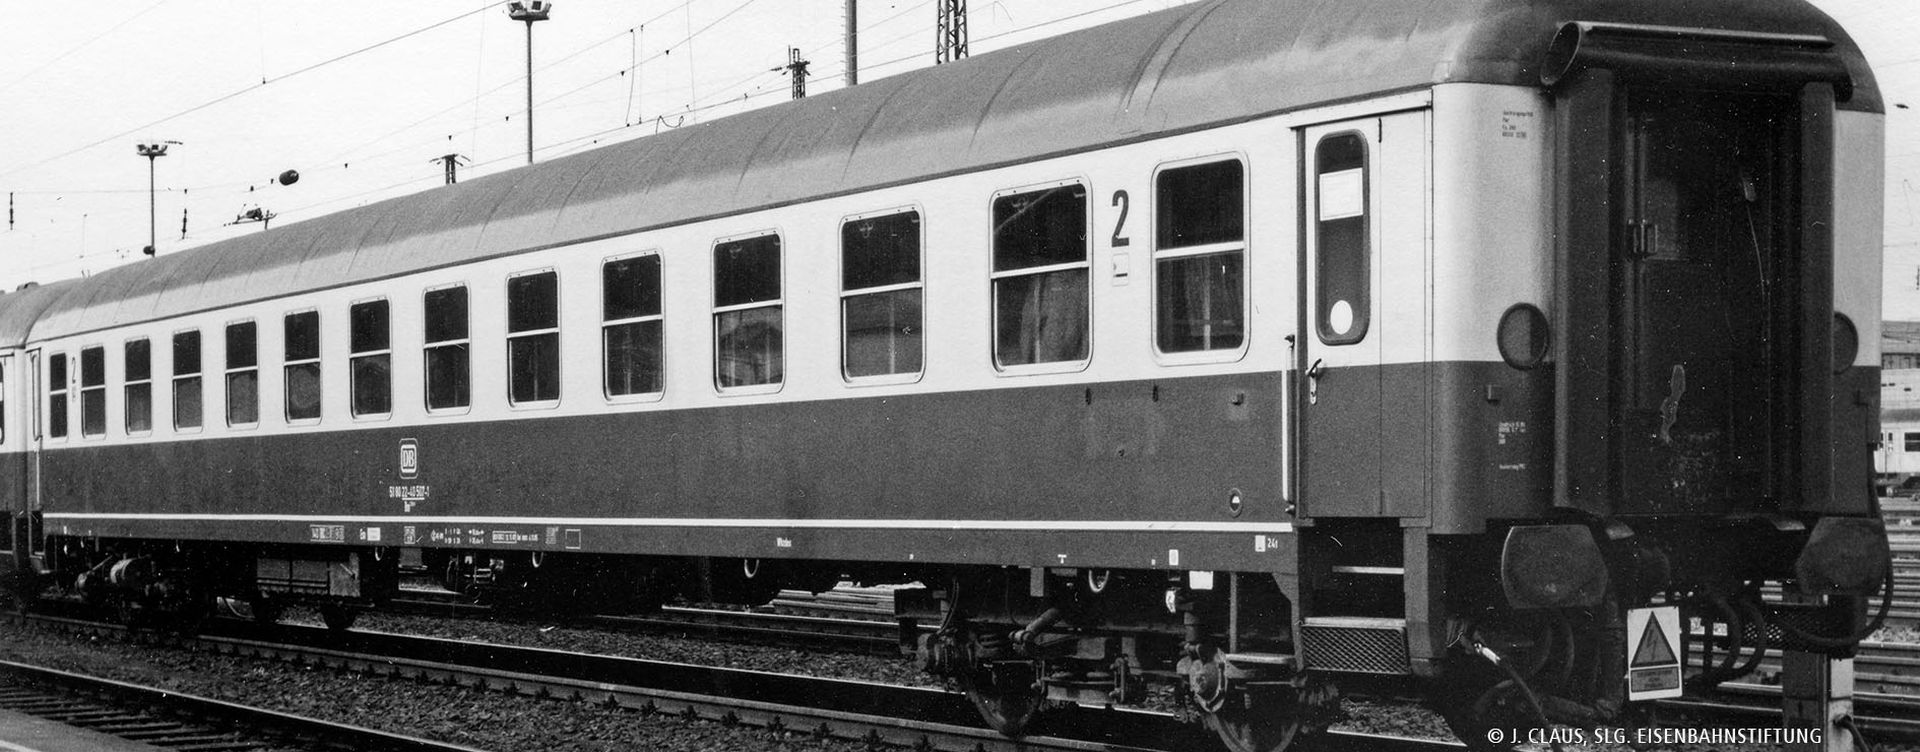 Brawa 58149 - Schnellzugwagen Bm238, DB, Ep.IV, mit Beleuchtung, AC